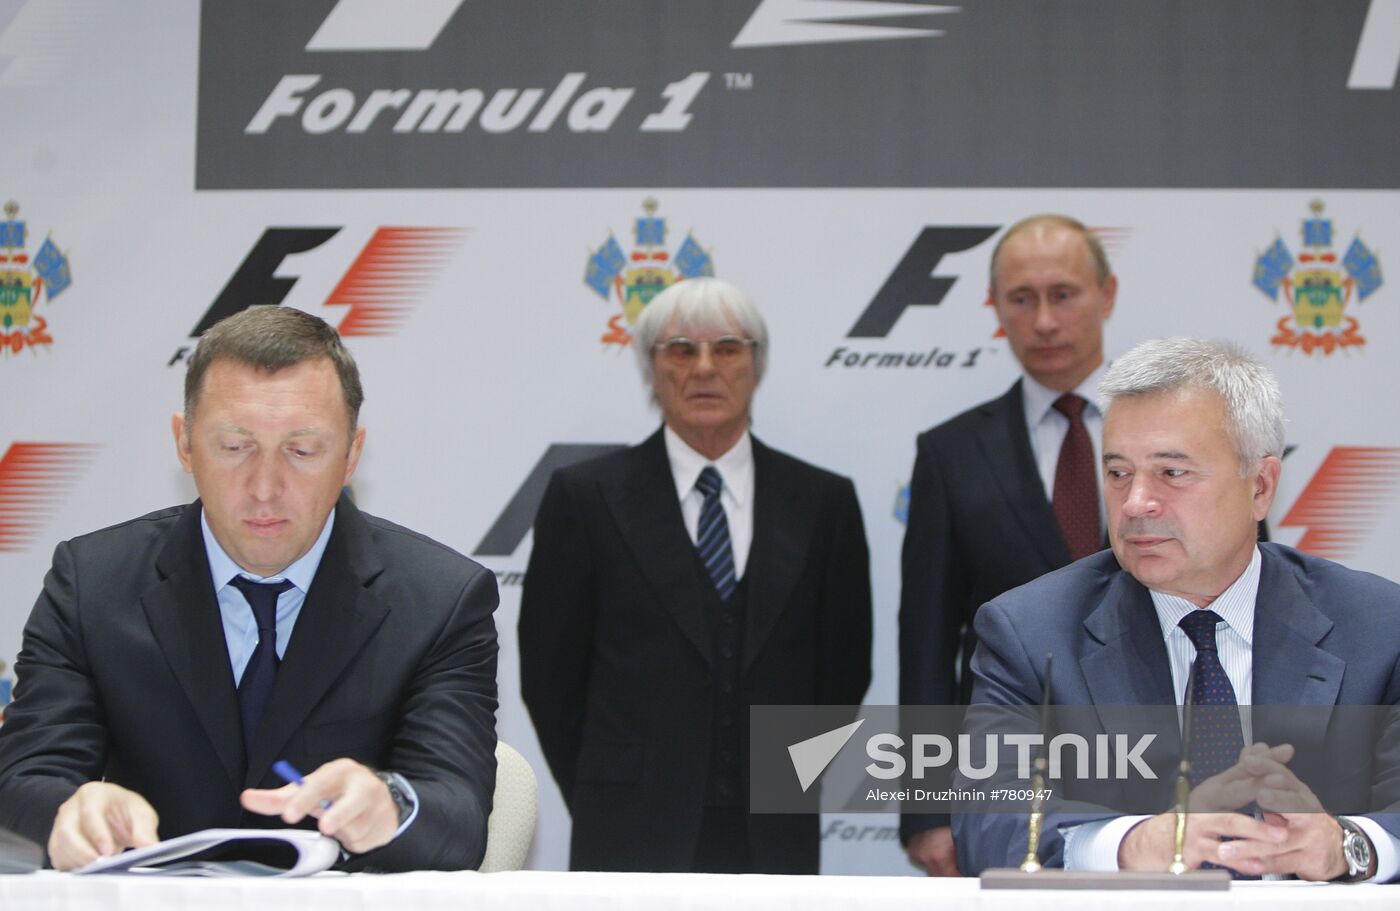 Russia's first Formula One Grand Prix